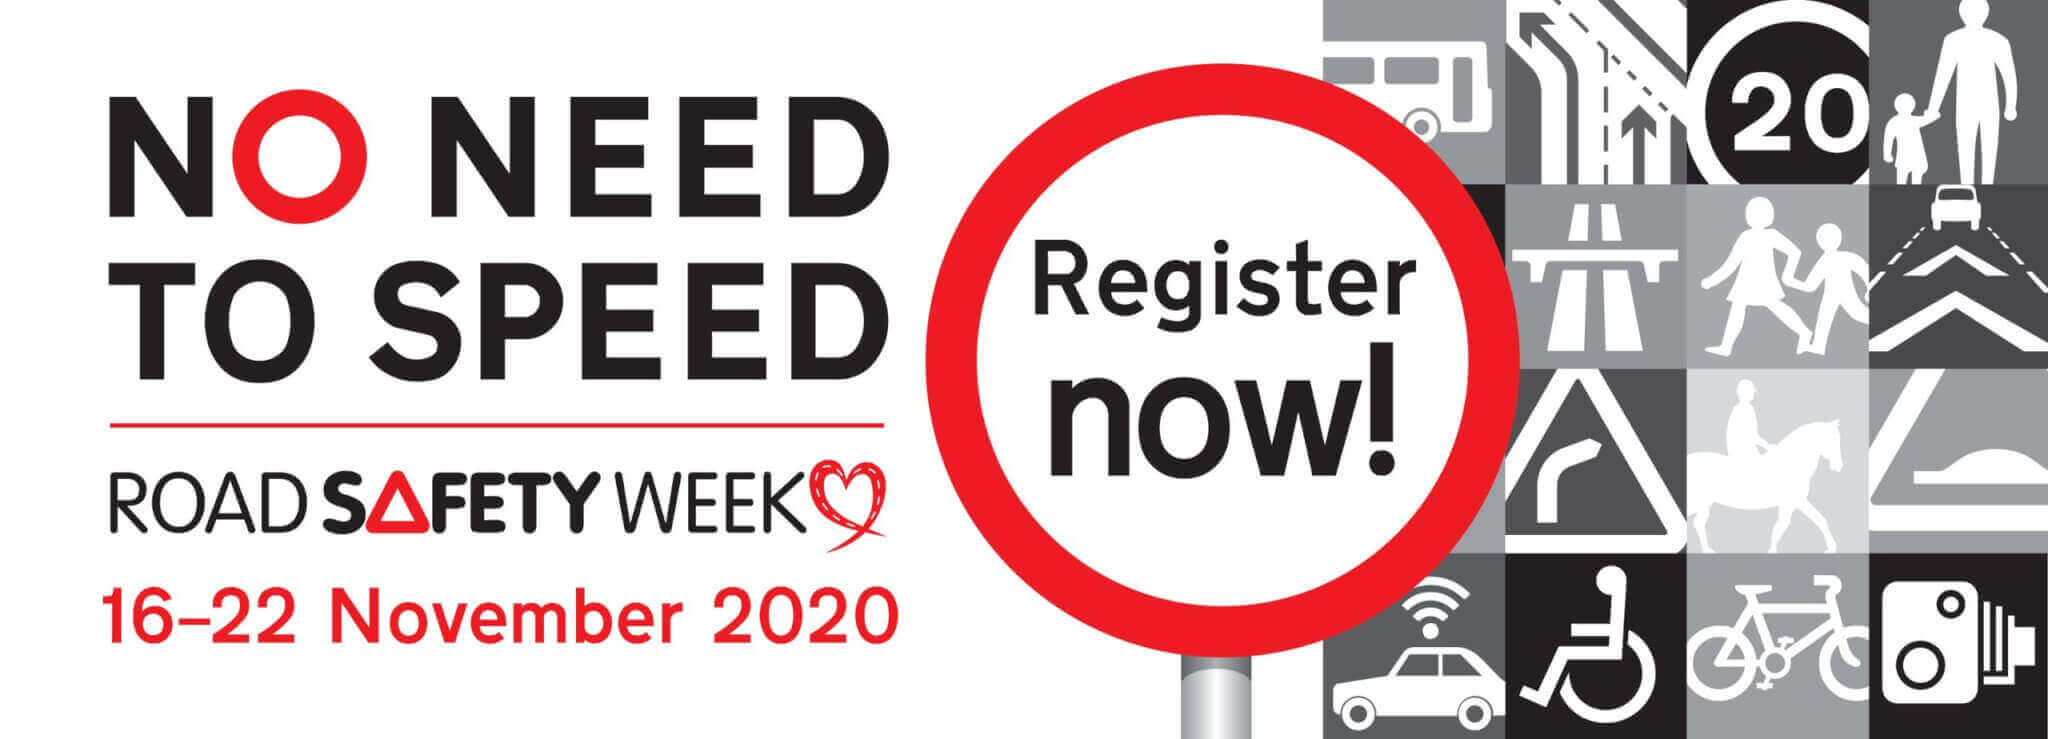 Road Safety Week November 2020 Register Now